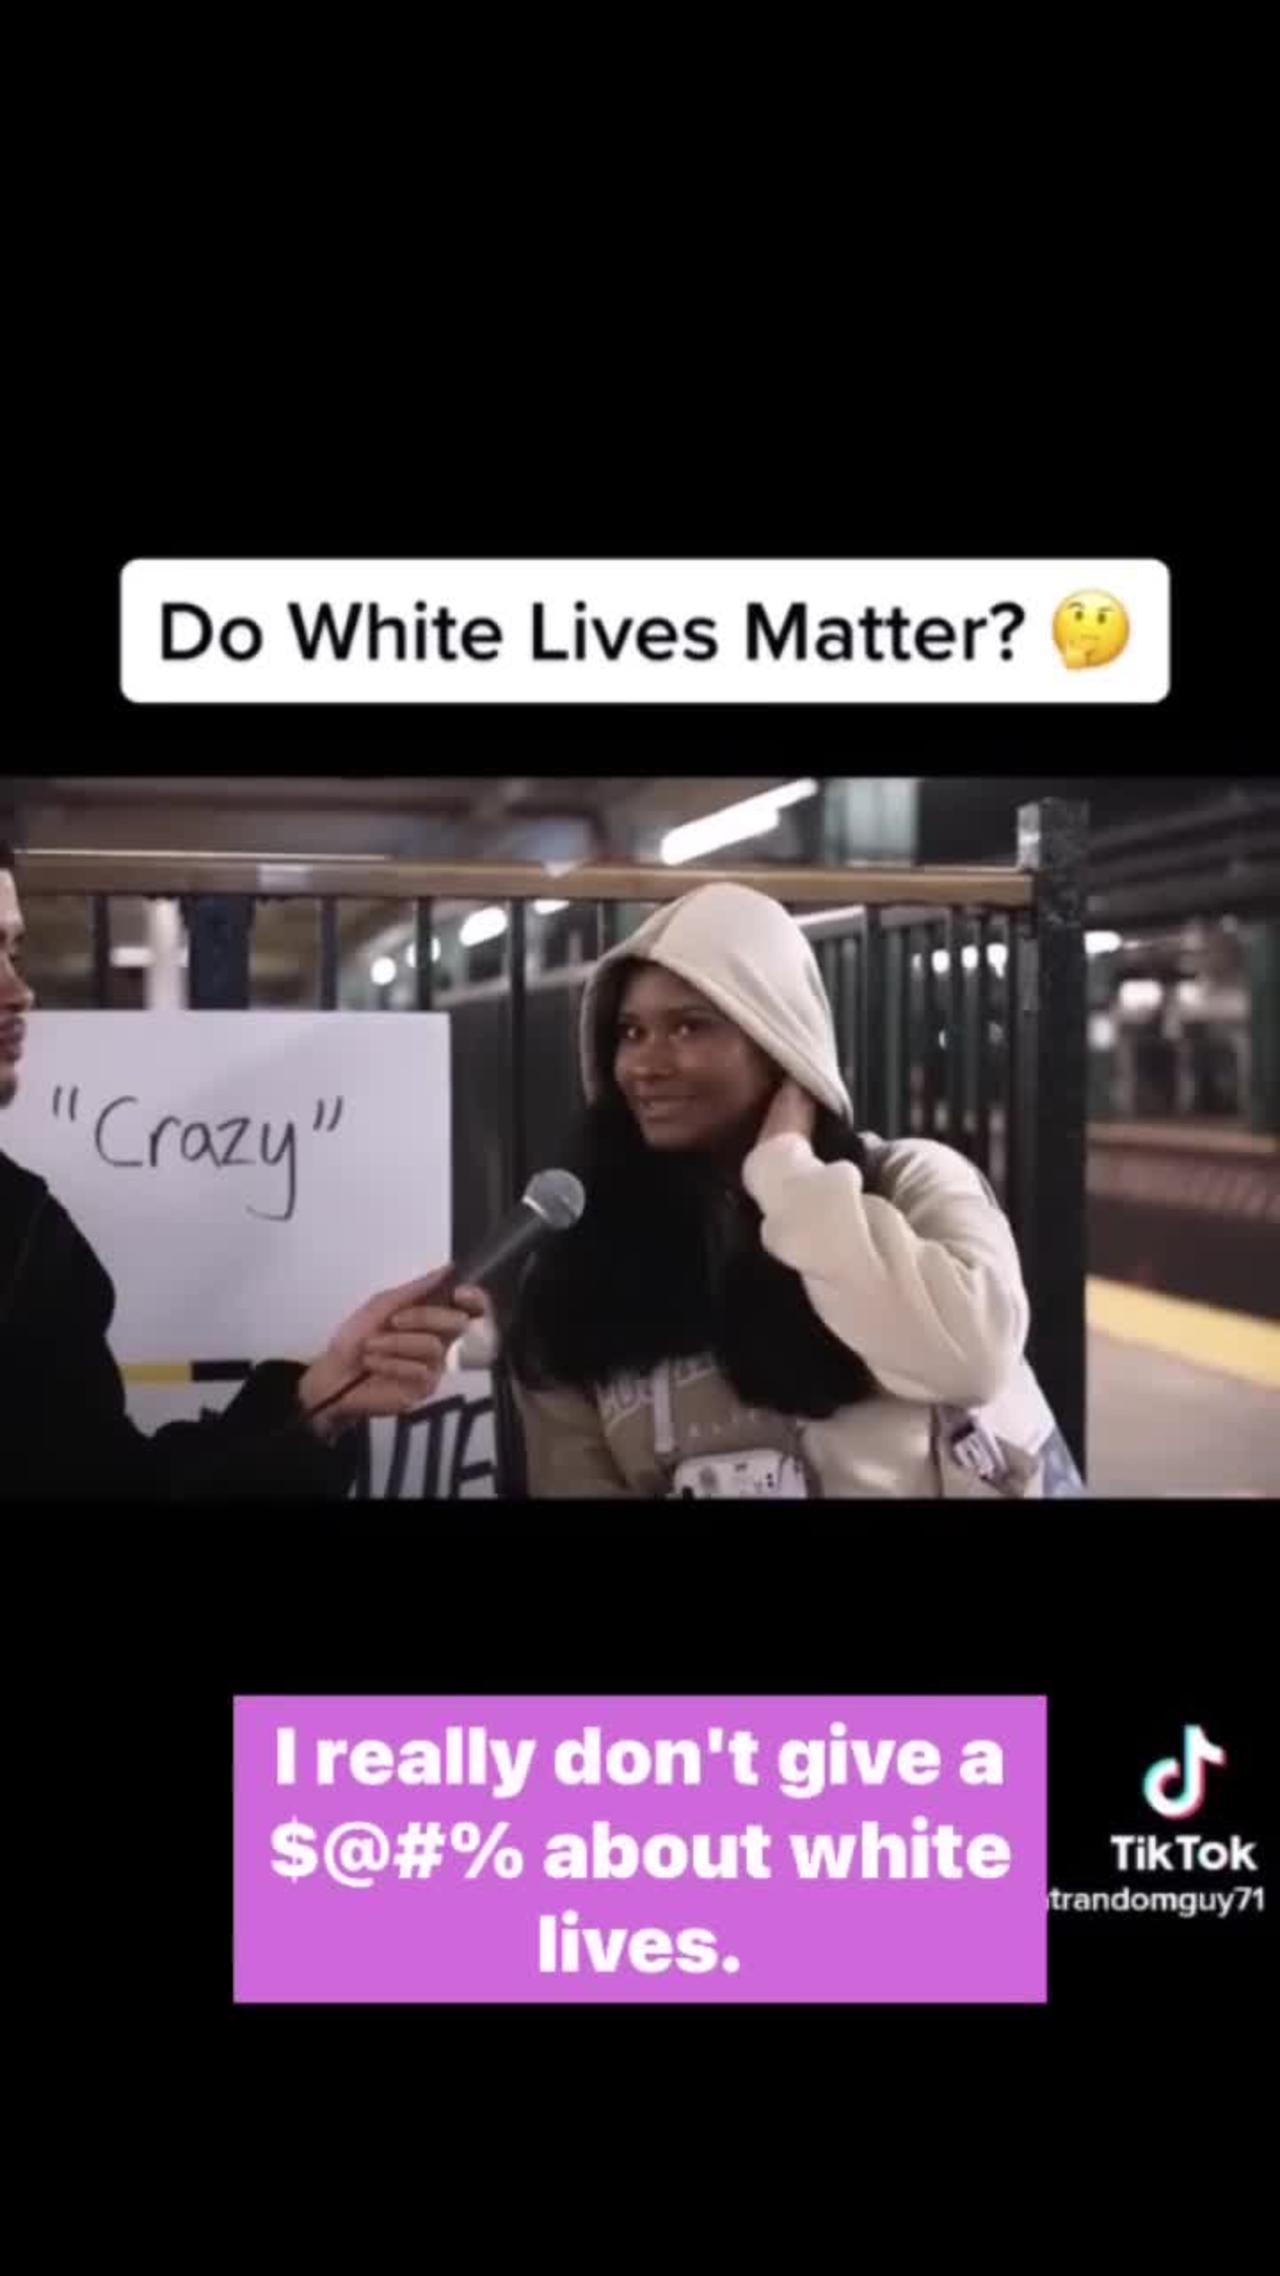 Do White lives matter?